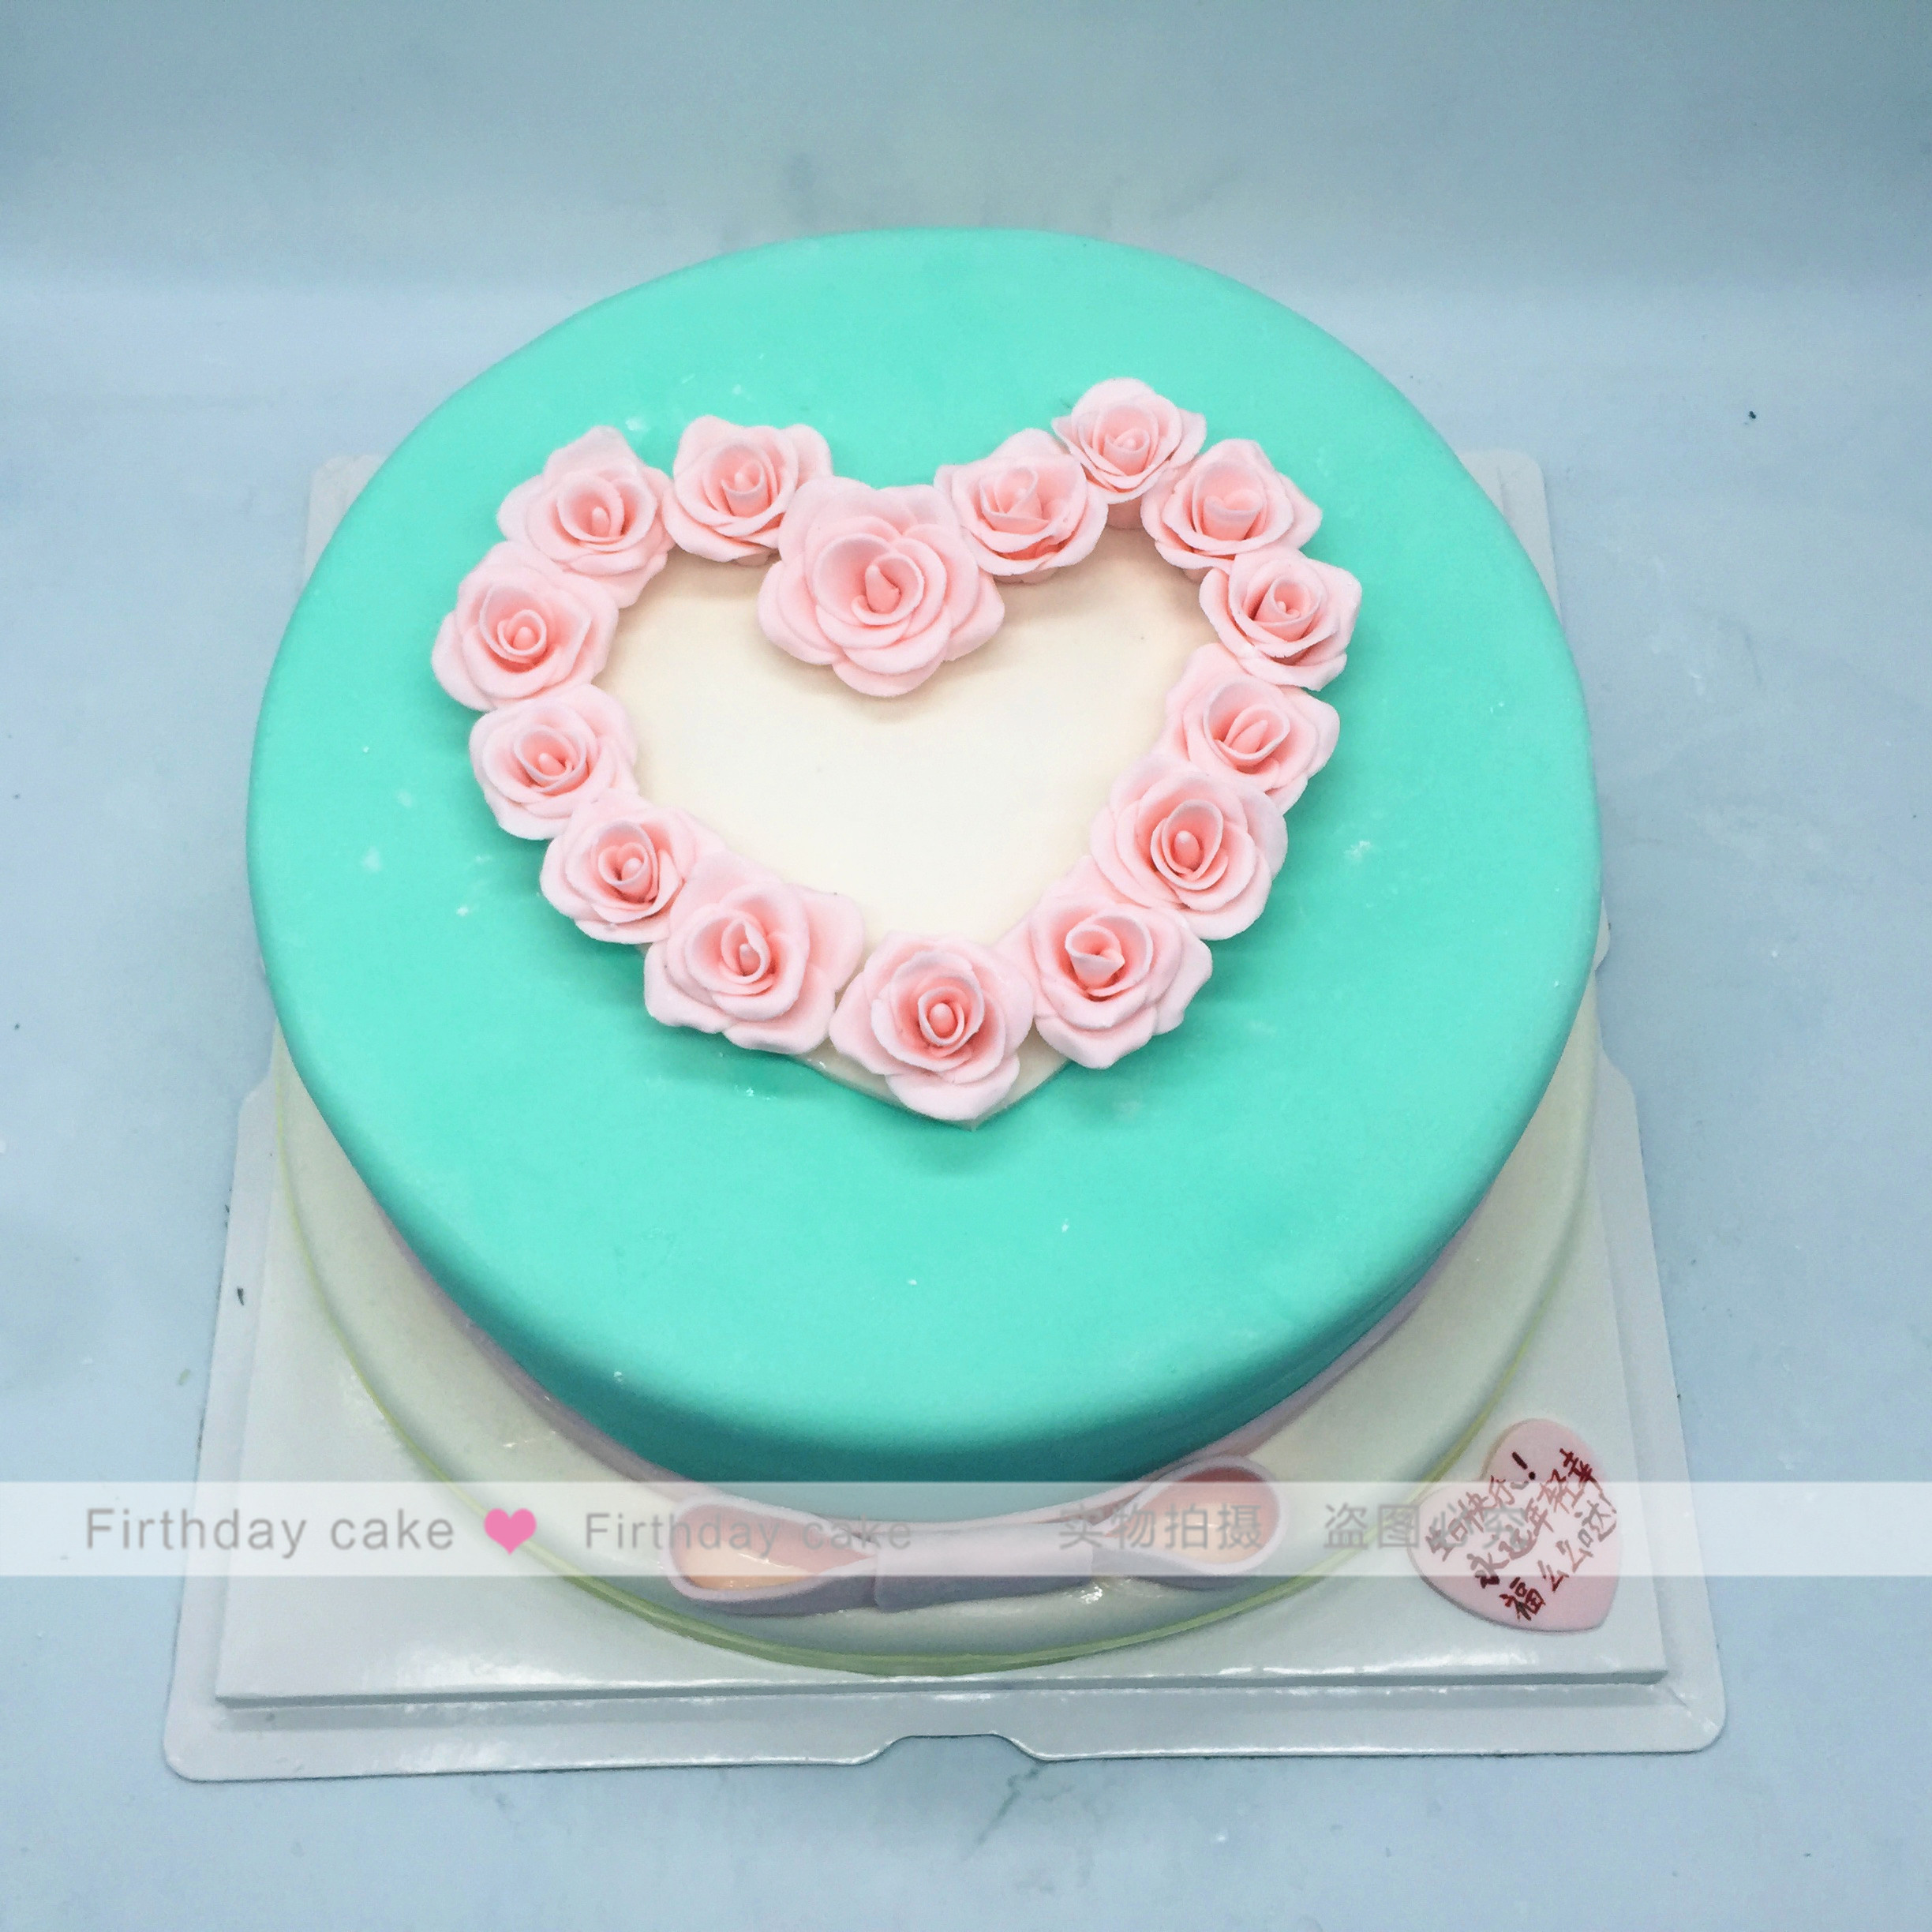 定制创意蛋糕 玫瑰tiffin生日蛋糕北京北京上海杭州同城翻糖蛋糕